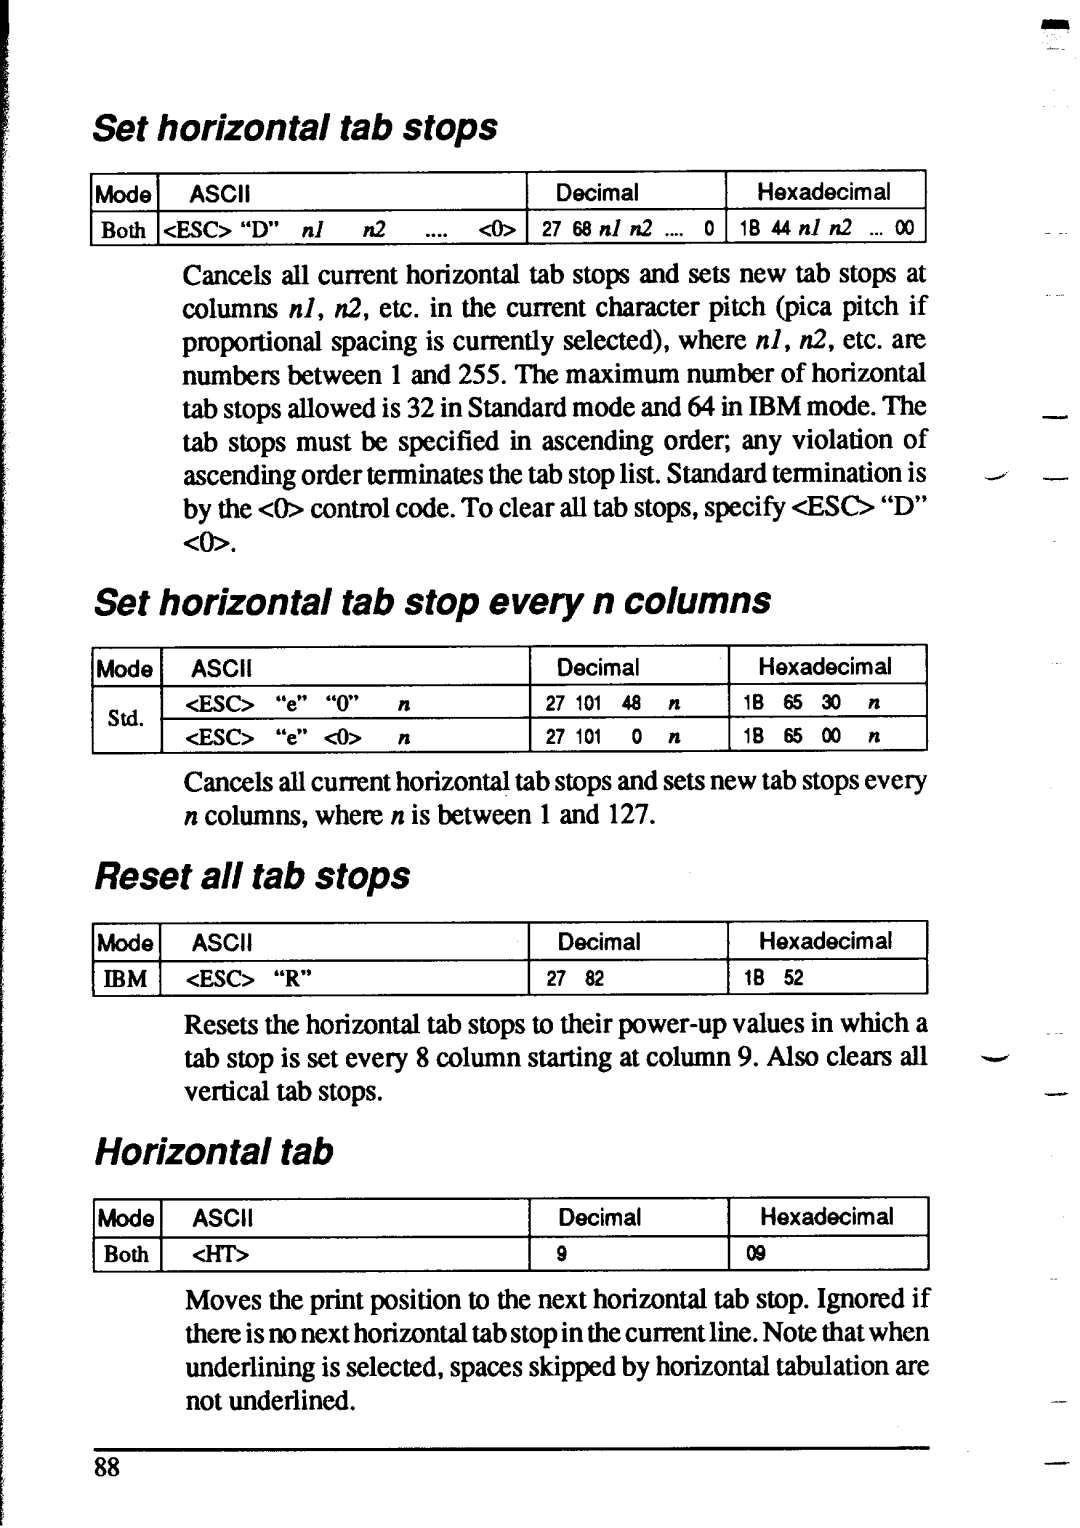 Star Micronics XR-1020, XR-1520 Set horizontal tab stops, Set horizontal tab stop every n columns, Reset all tab stops 